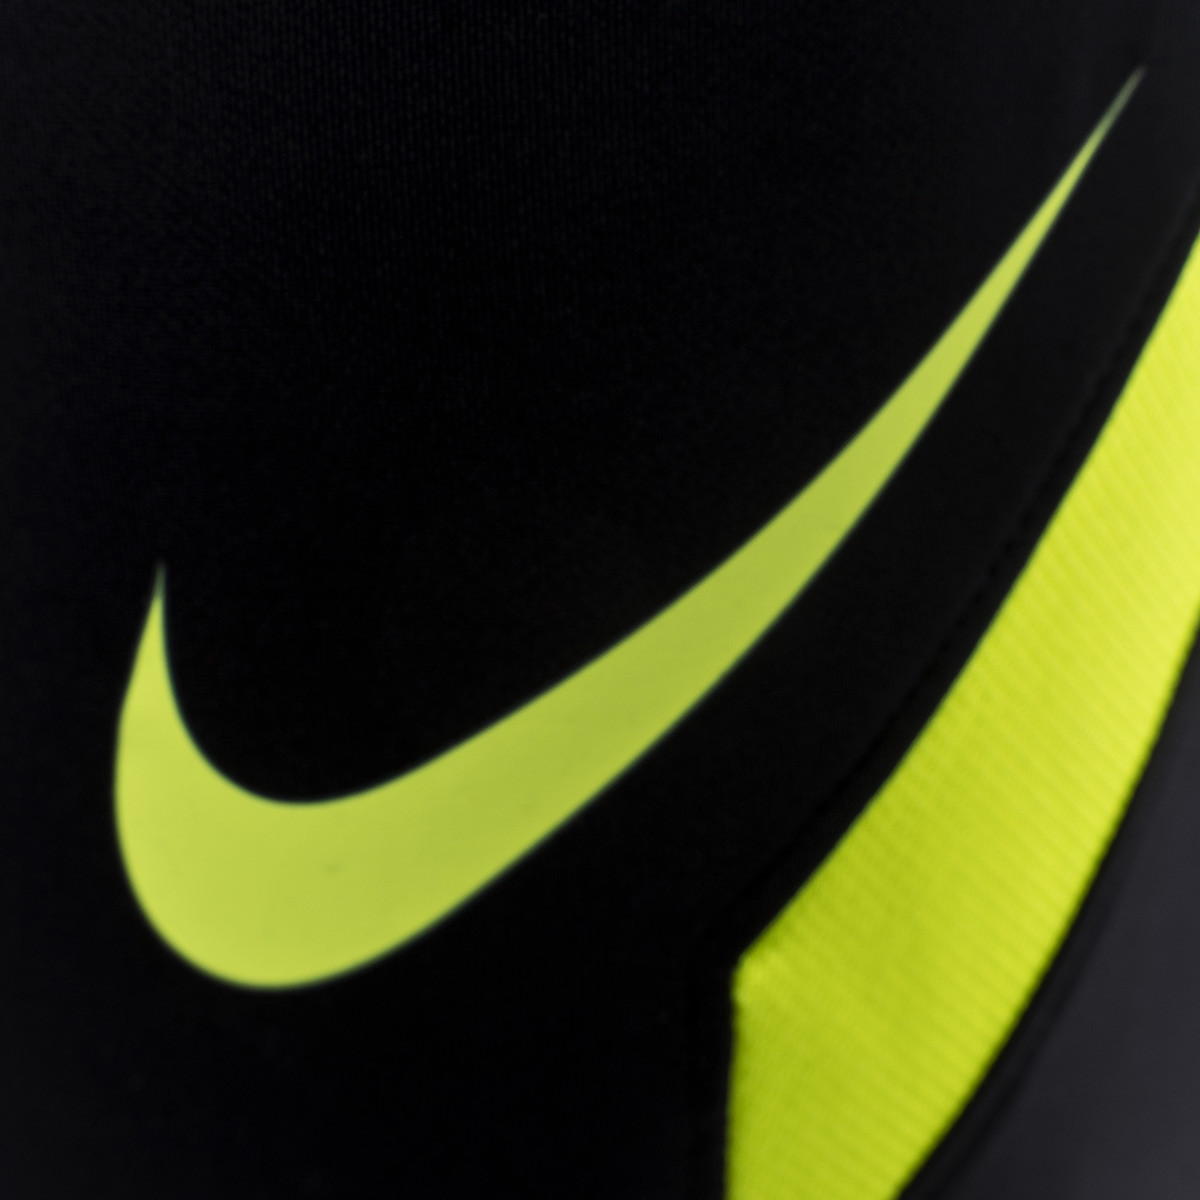 Suposiciones, suposiciones. Adivinar salami Evaluable Pantalón largo Nike Dri-Fit Strike KP Black-Somke grey-Black-Volt - Fútbol  Emotion